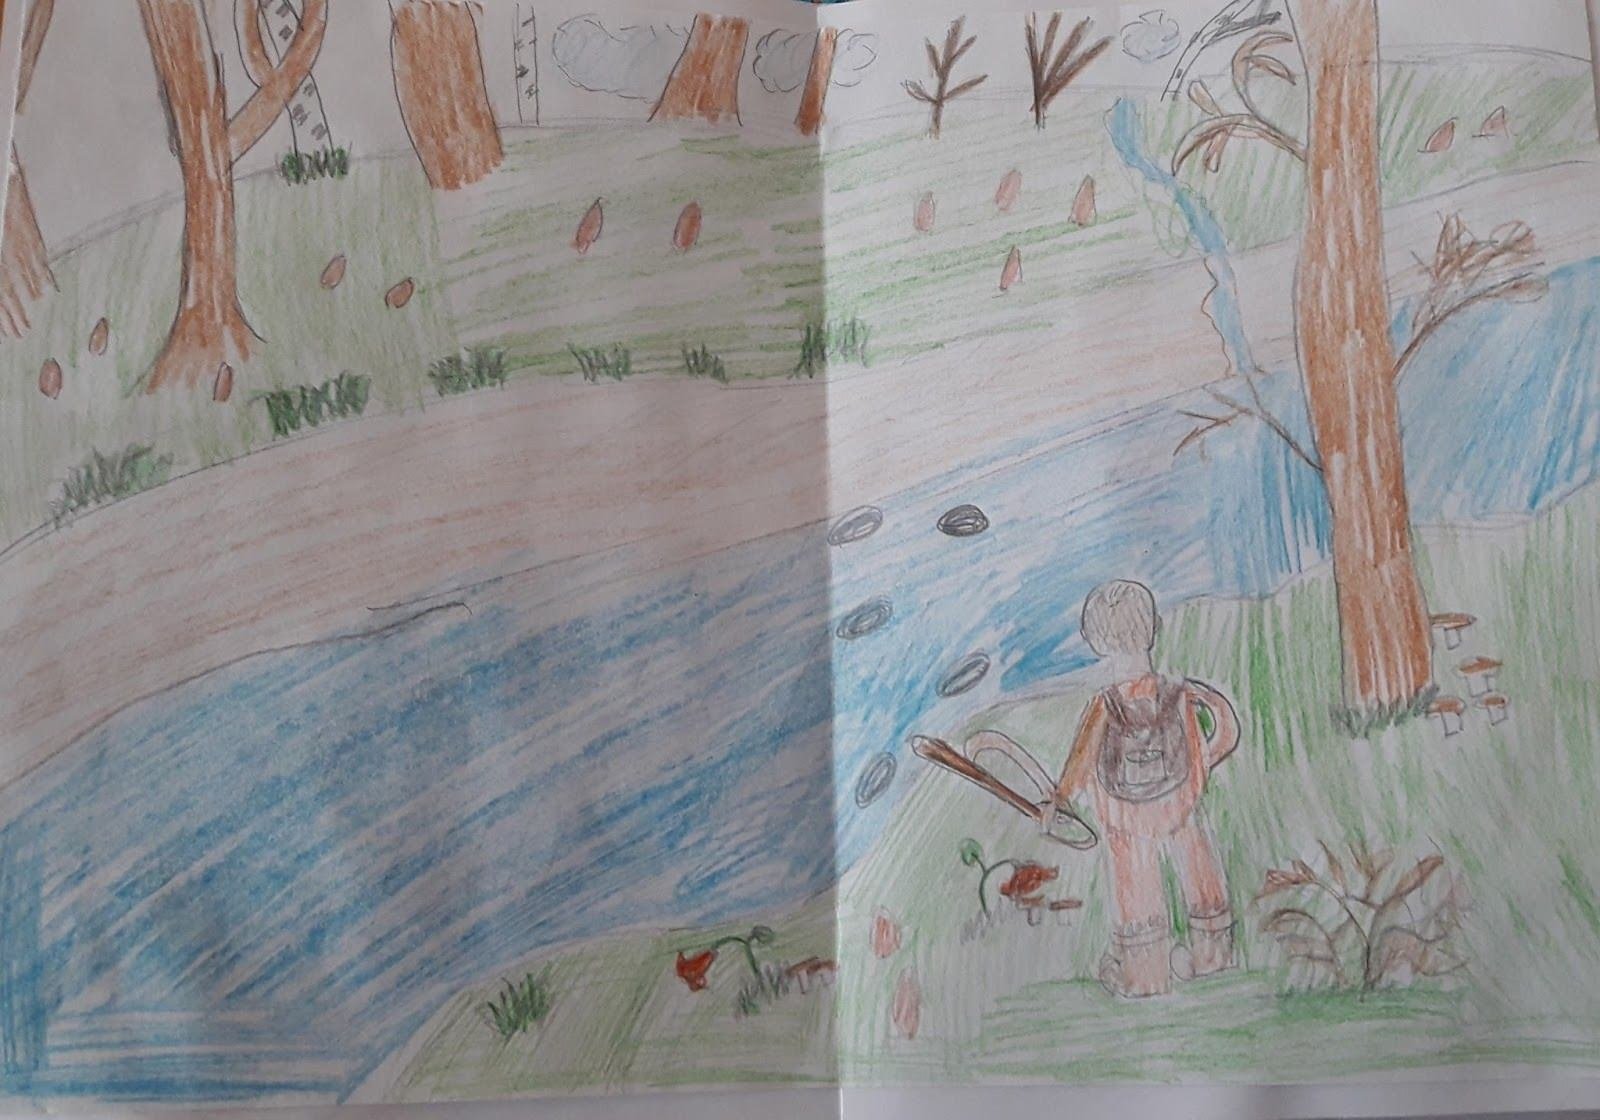 Иллюстрация к рисунку васюткино озеро. Иллюстрация Васюткино озеро 5 класс. Легкая иллюстрация к рассказу Васюткино озеро. Детские иллюстрации к рассказу Васюткино озеро. Иллюстрация к рассказу Васюткино озеро 5 класс.